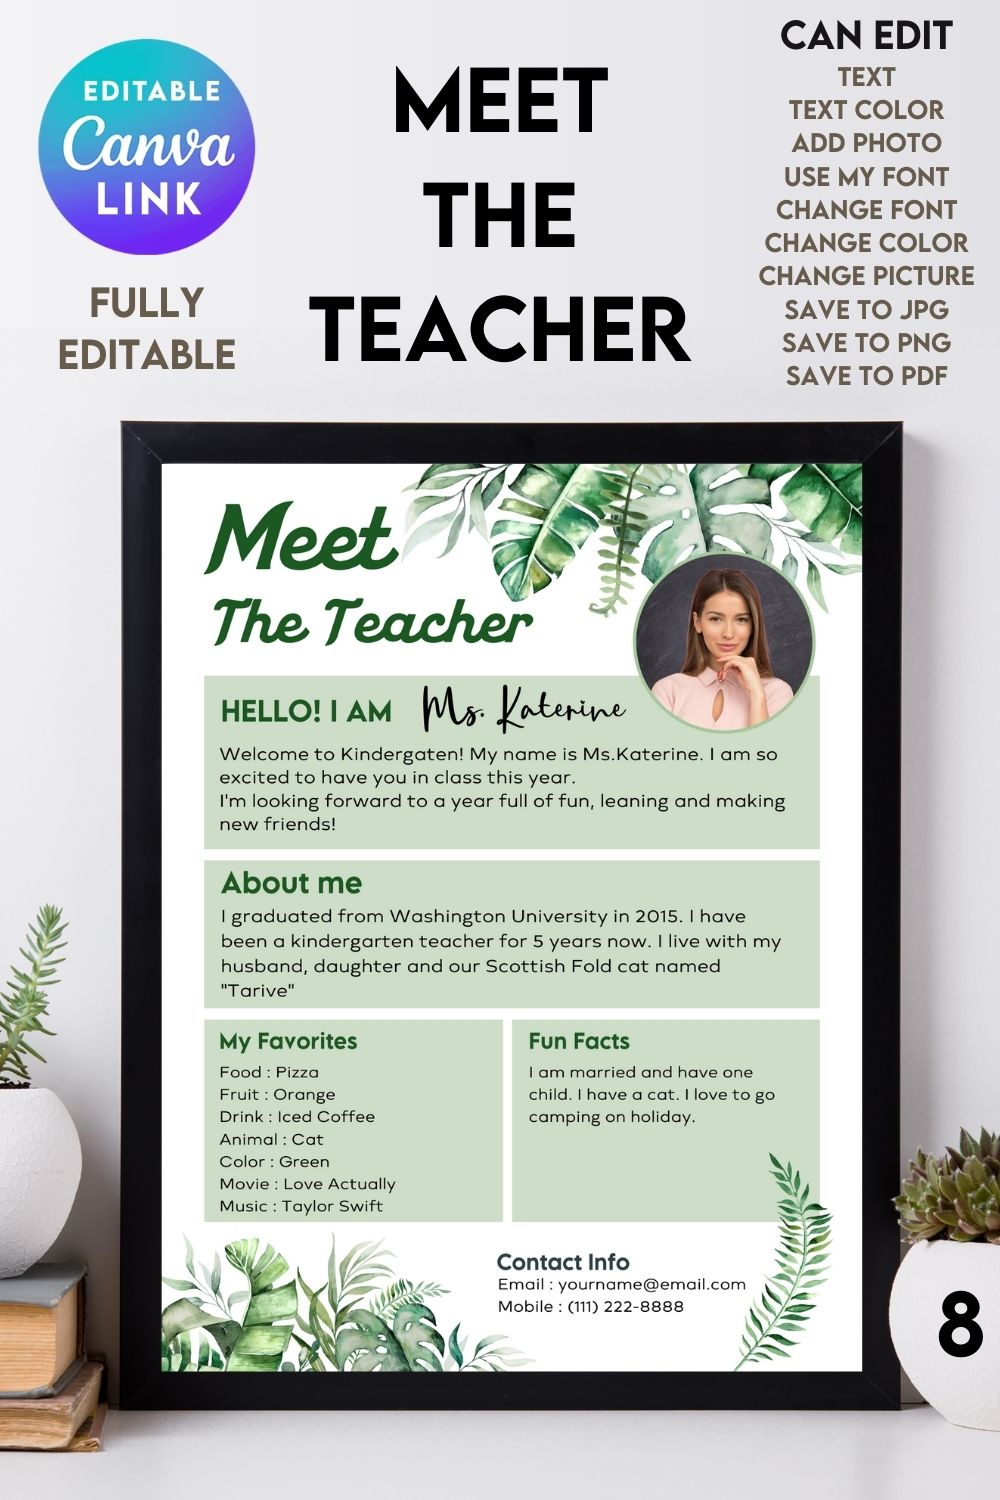 Meet The Teacher #8 – Canva Template pinterest preview image.